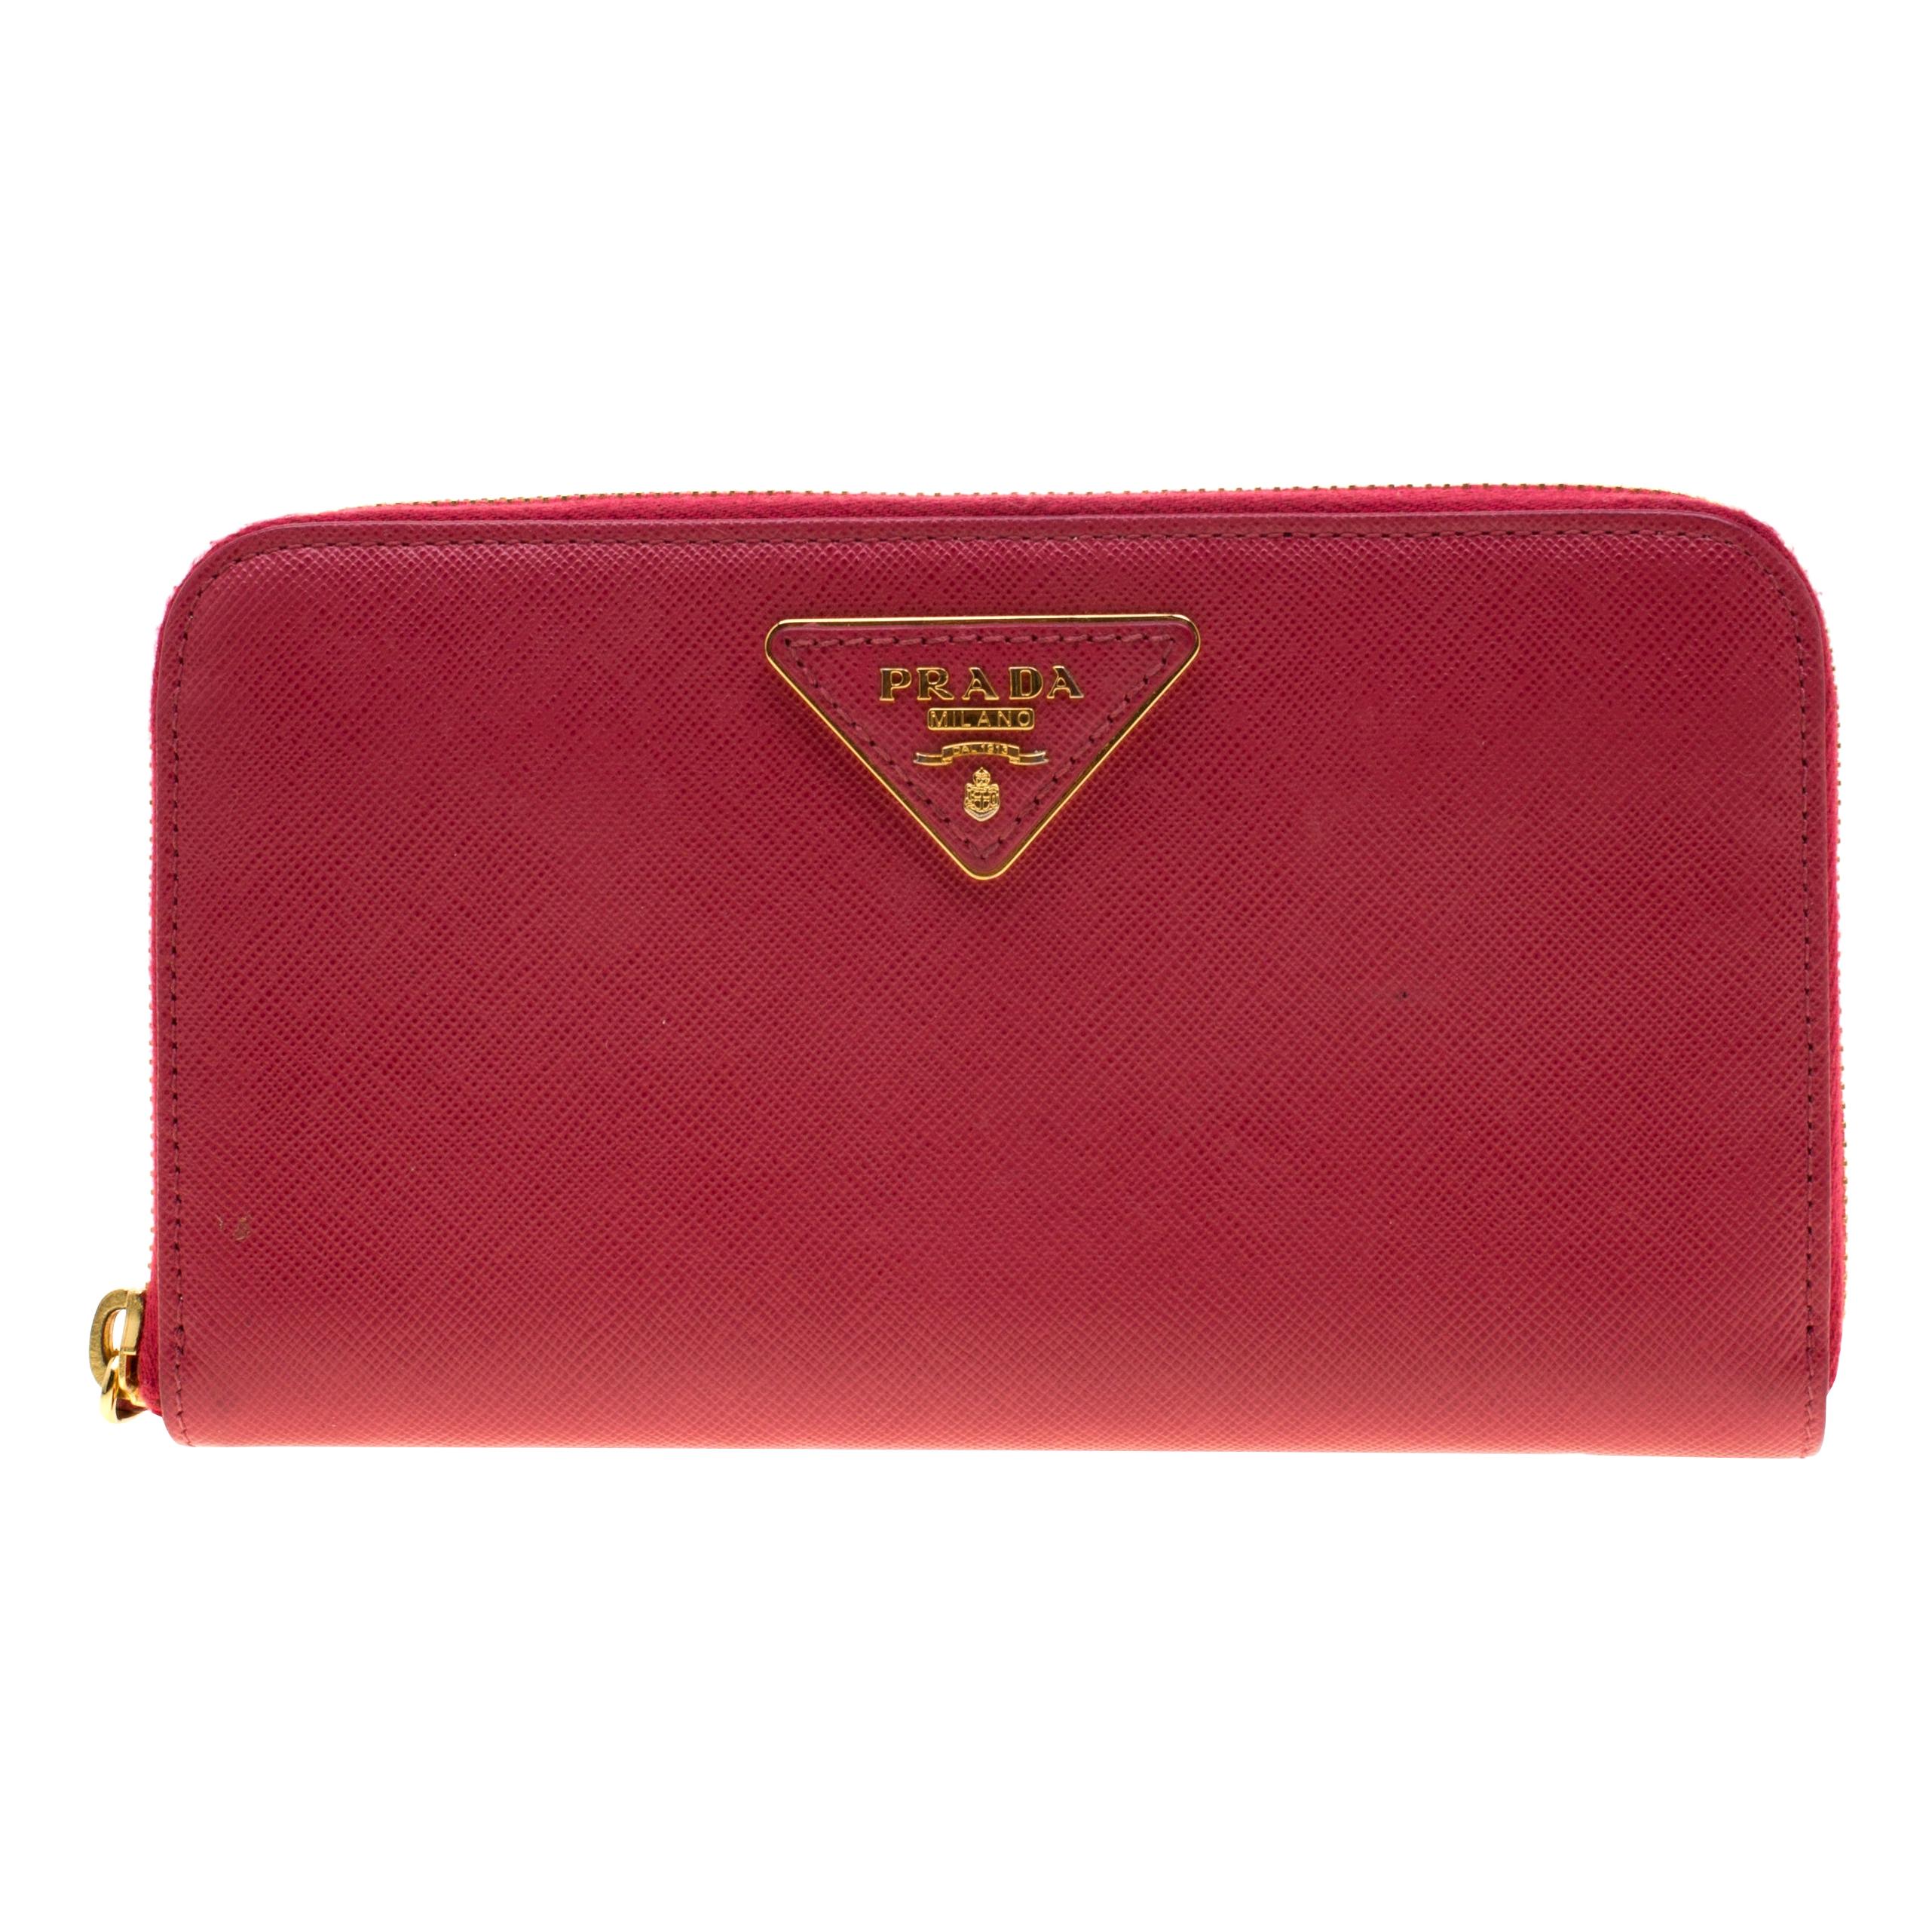 Prada Hot Pink Saffiano Leather Zip Around Wallet